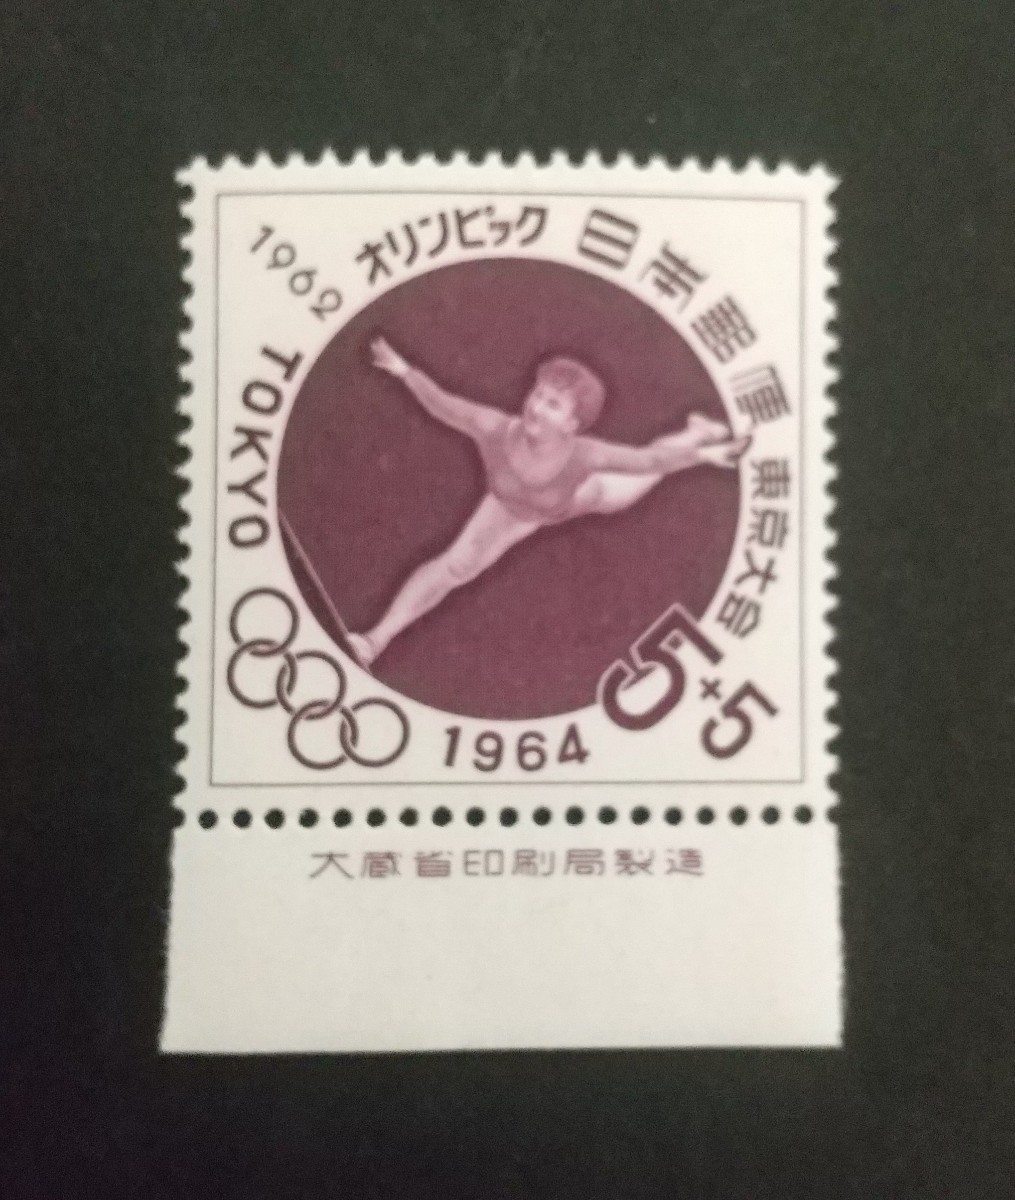 記念切手 東京オリンピック 寄附金付平均台 1962 大蔵省銘板付き 未使用品 (ST-10)の画像1